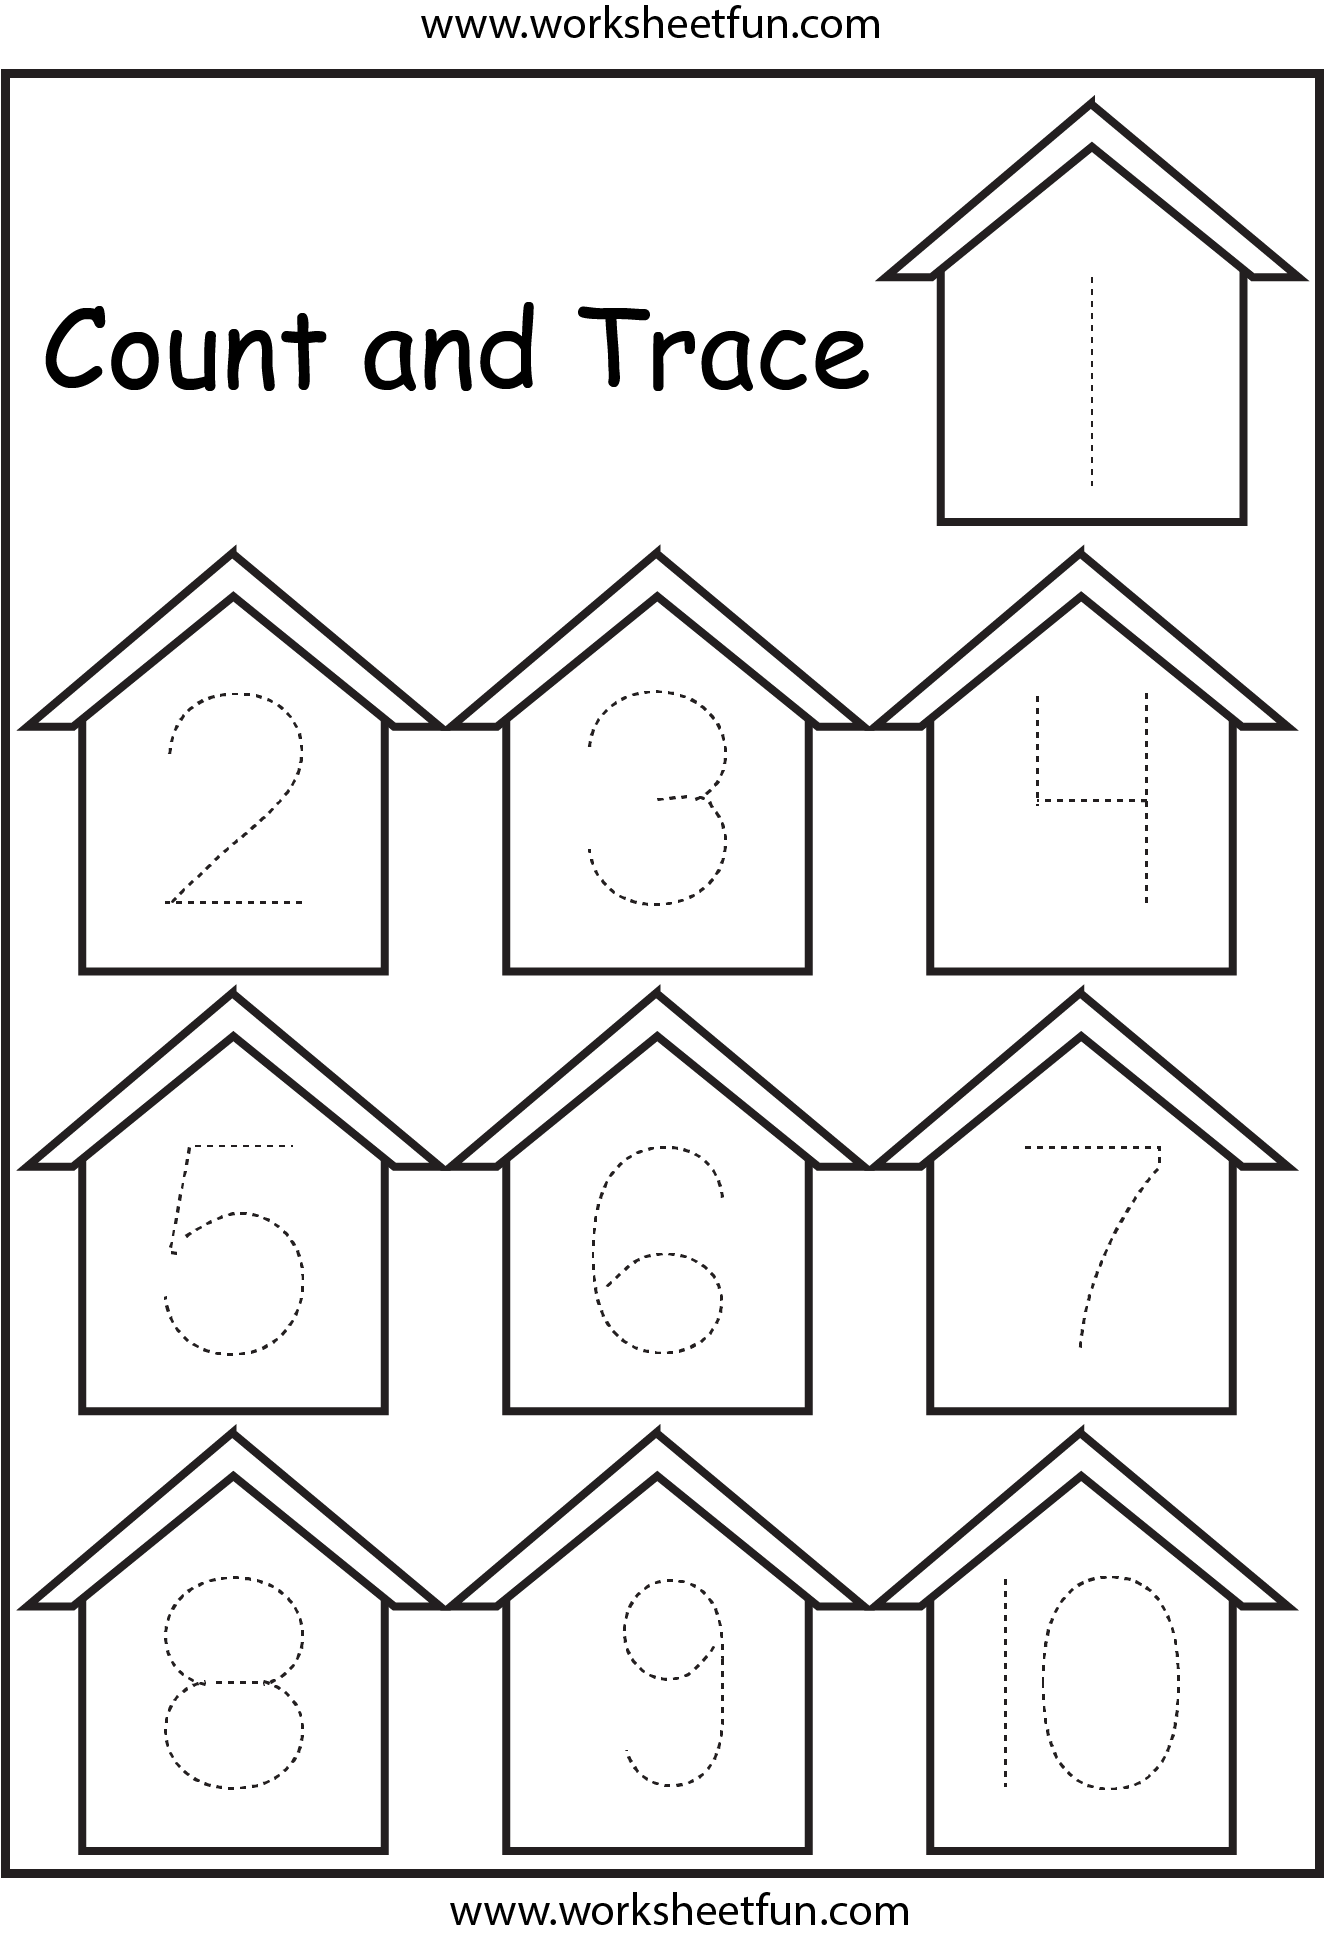 number-tracing-1-10-worksheet-free-preschool-worksheets-numbers-images